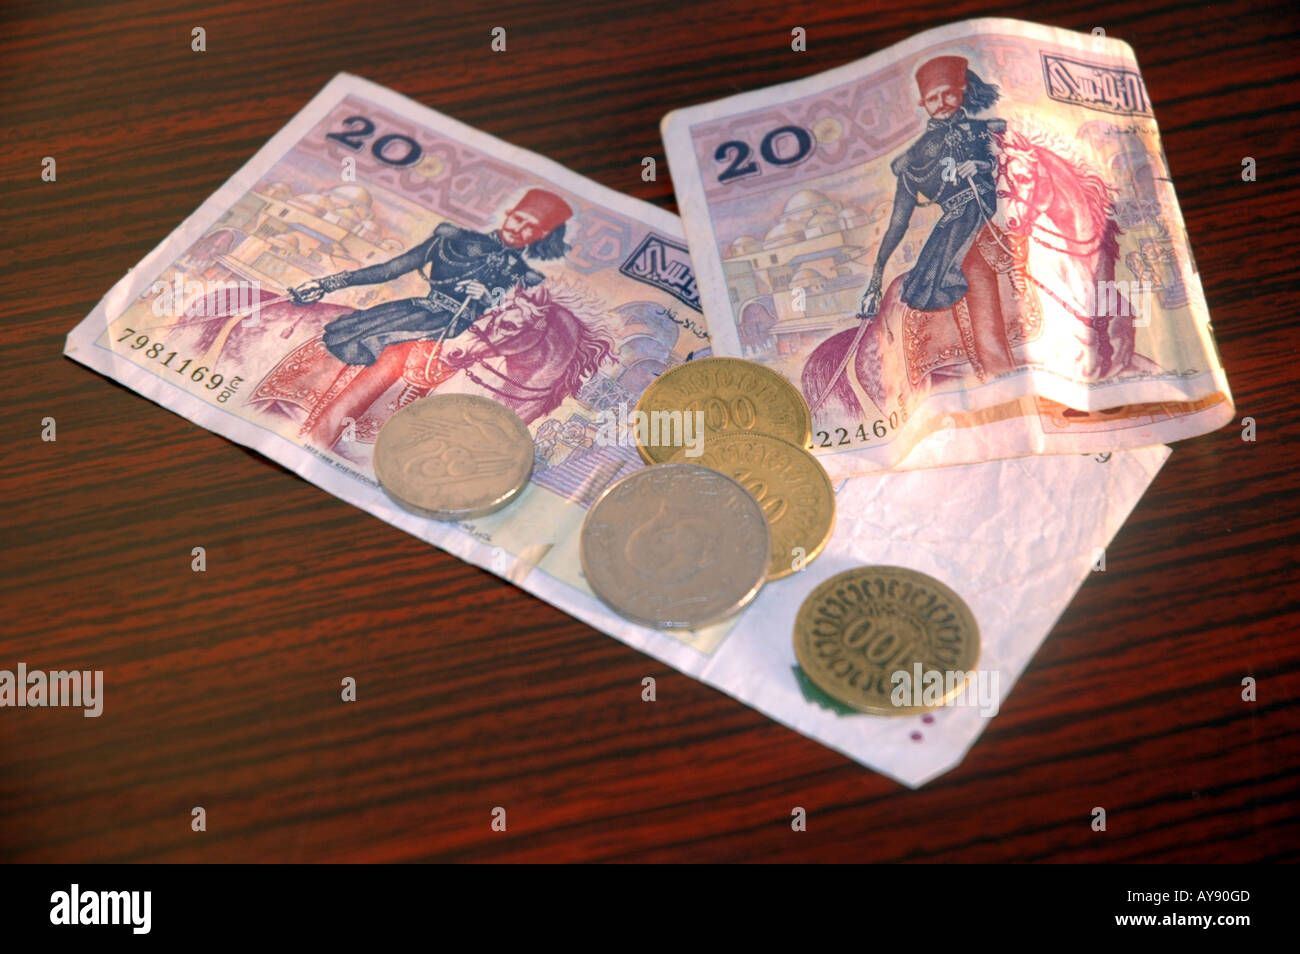 Monnaie dinar tunisien, billets et pièces Banque D'Images